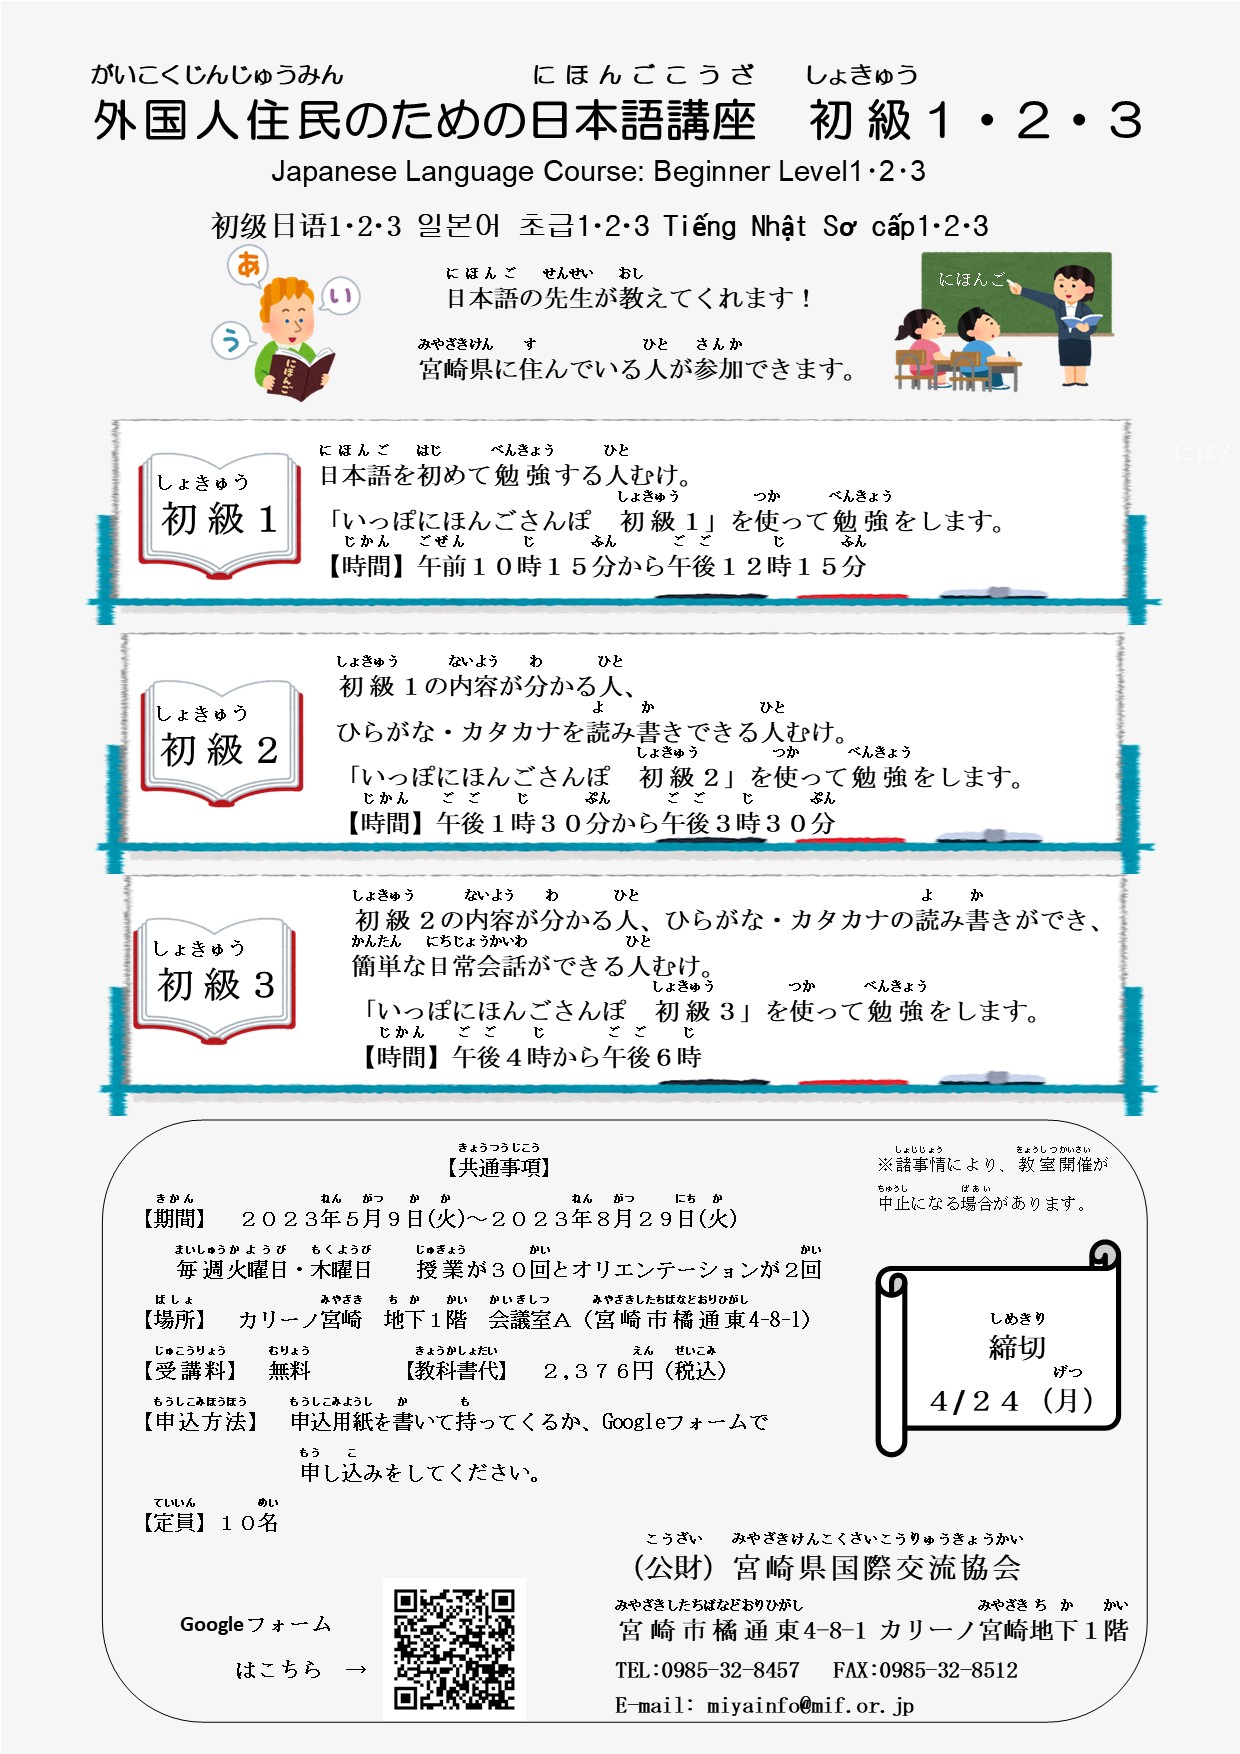 外国人住民のための日本語講座初級１･２・３　※要申込み